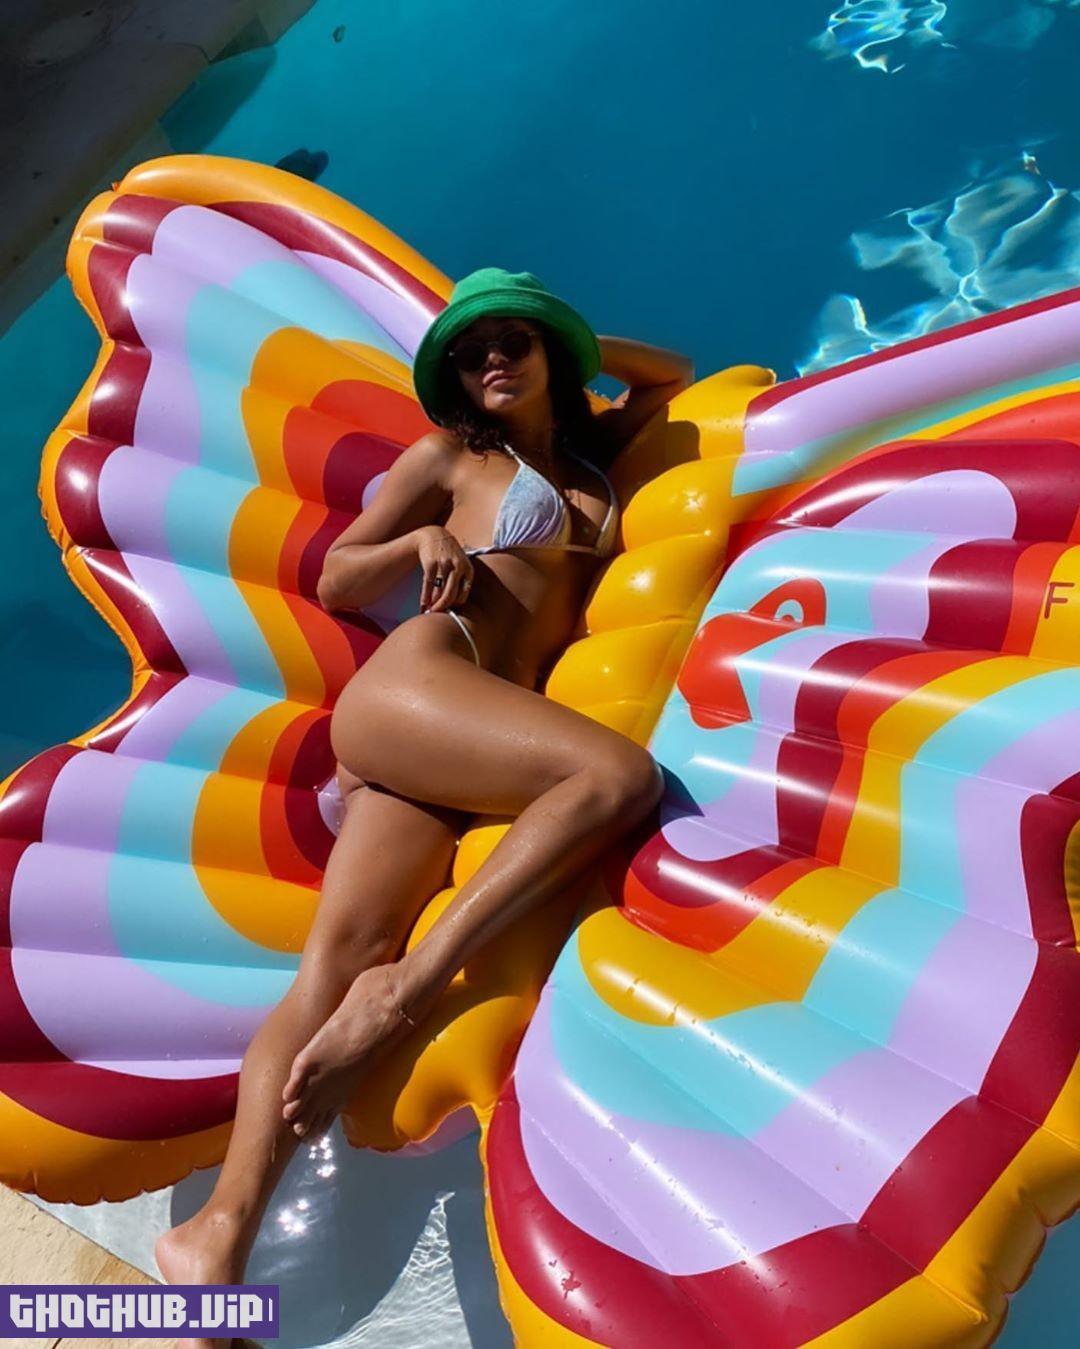 Vanessa Hudgens In A Mini Bikini On A Giant Inflatable